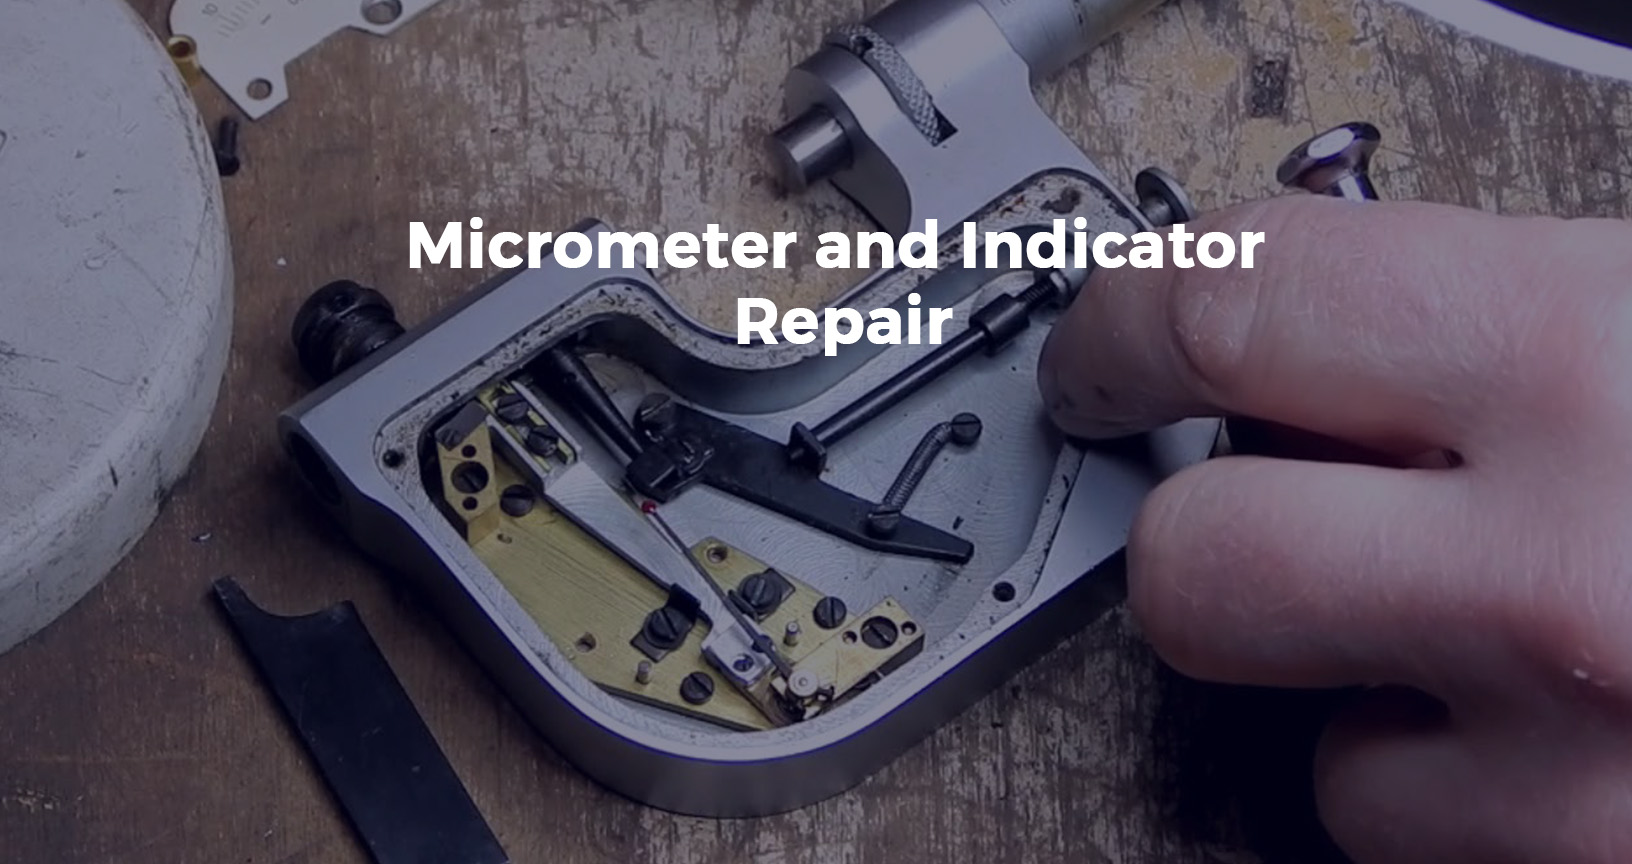 micrometer and indicator repair